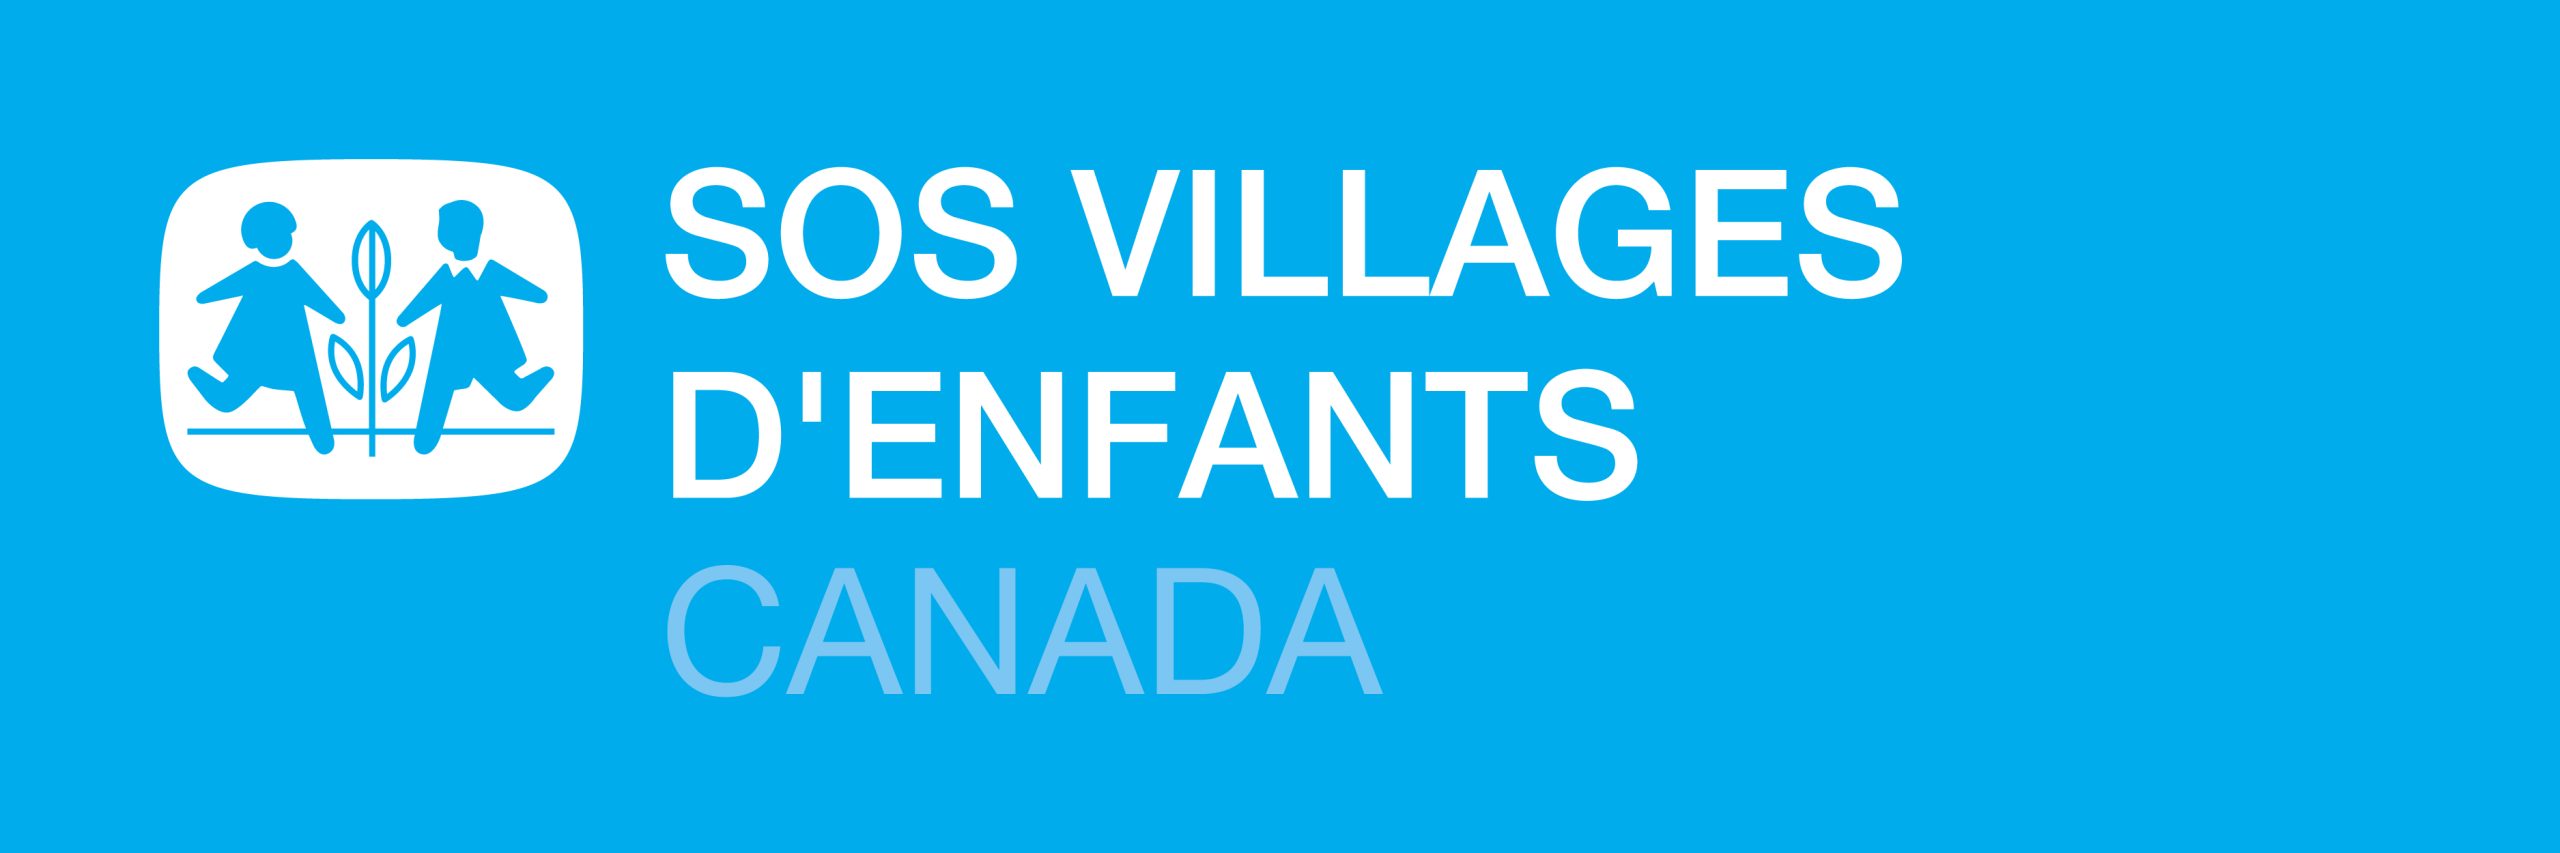 SOS Villages d’enfants Canada - Logo